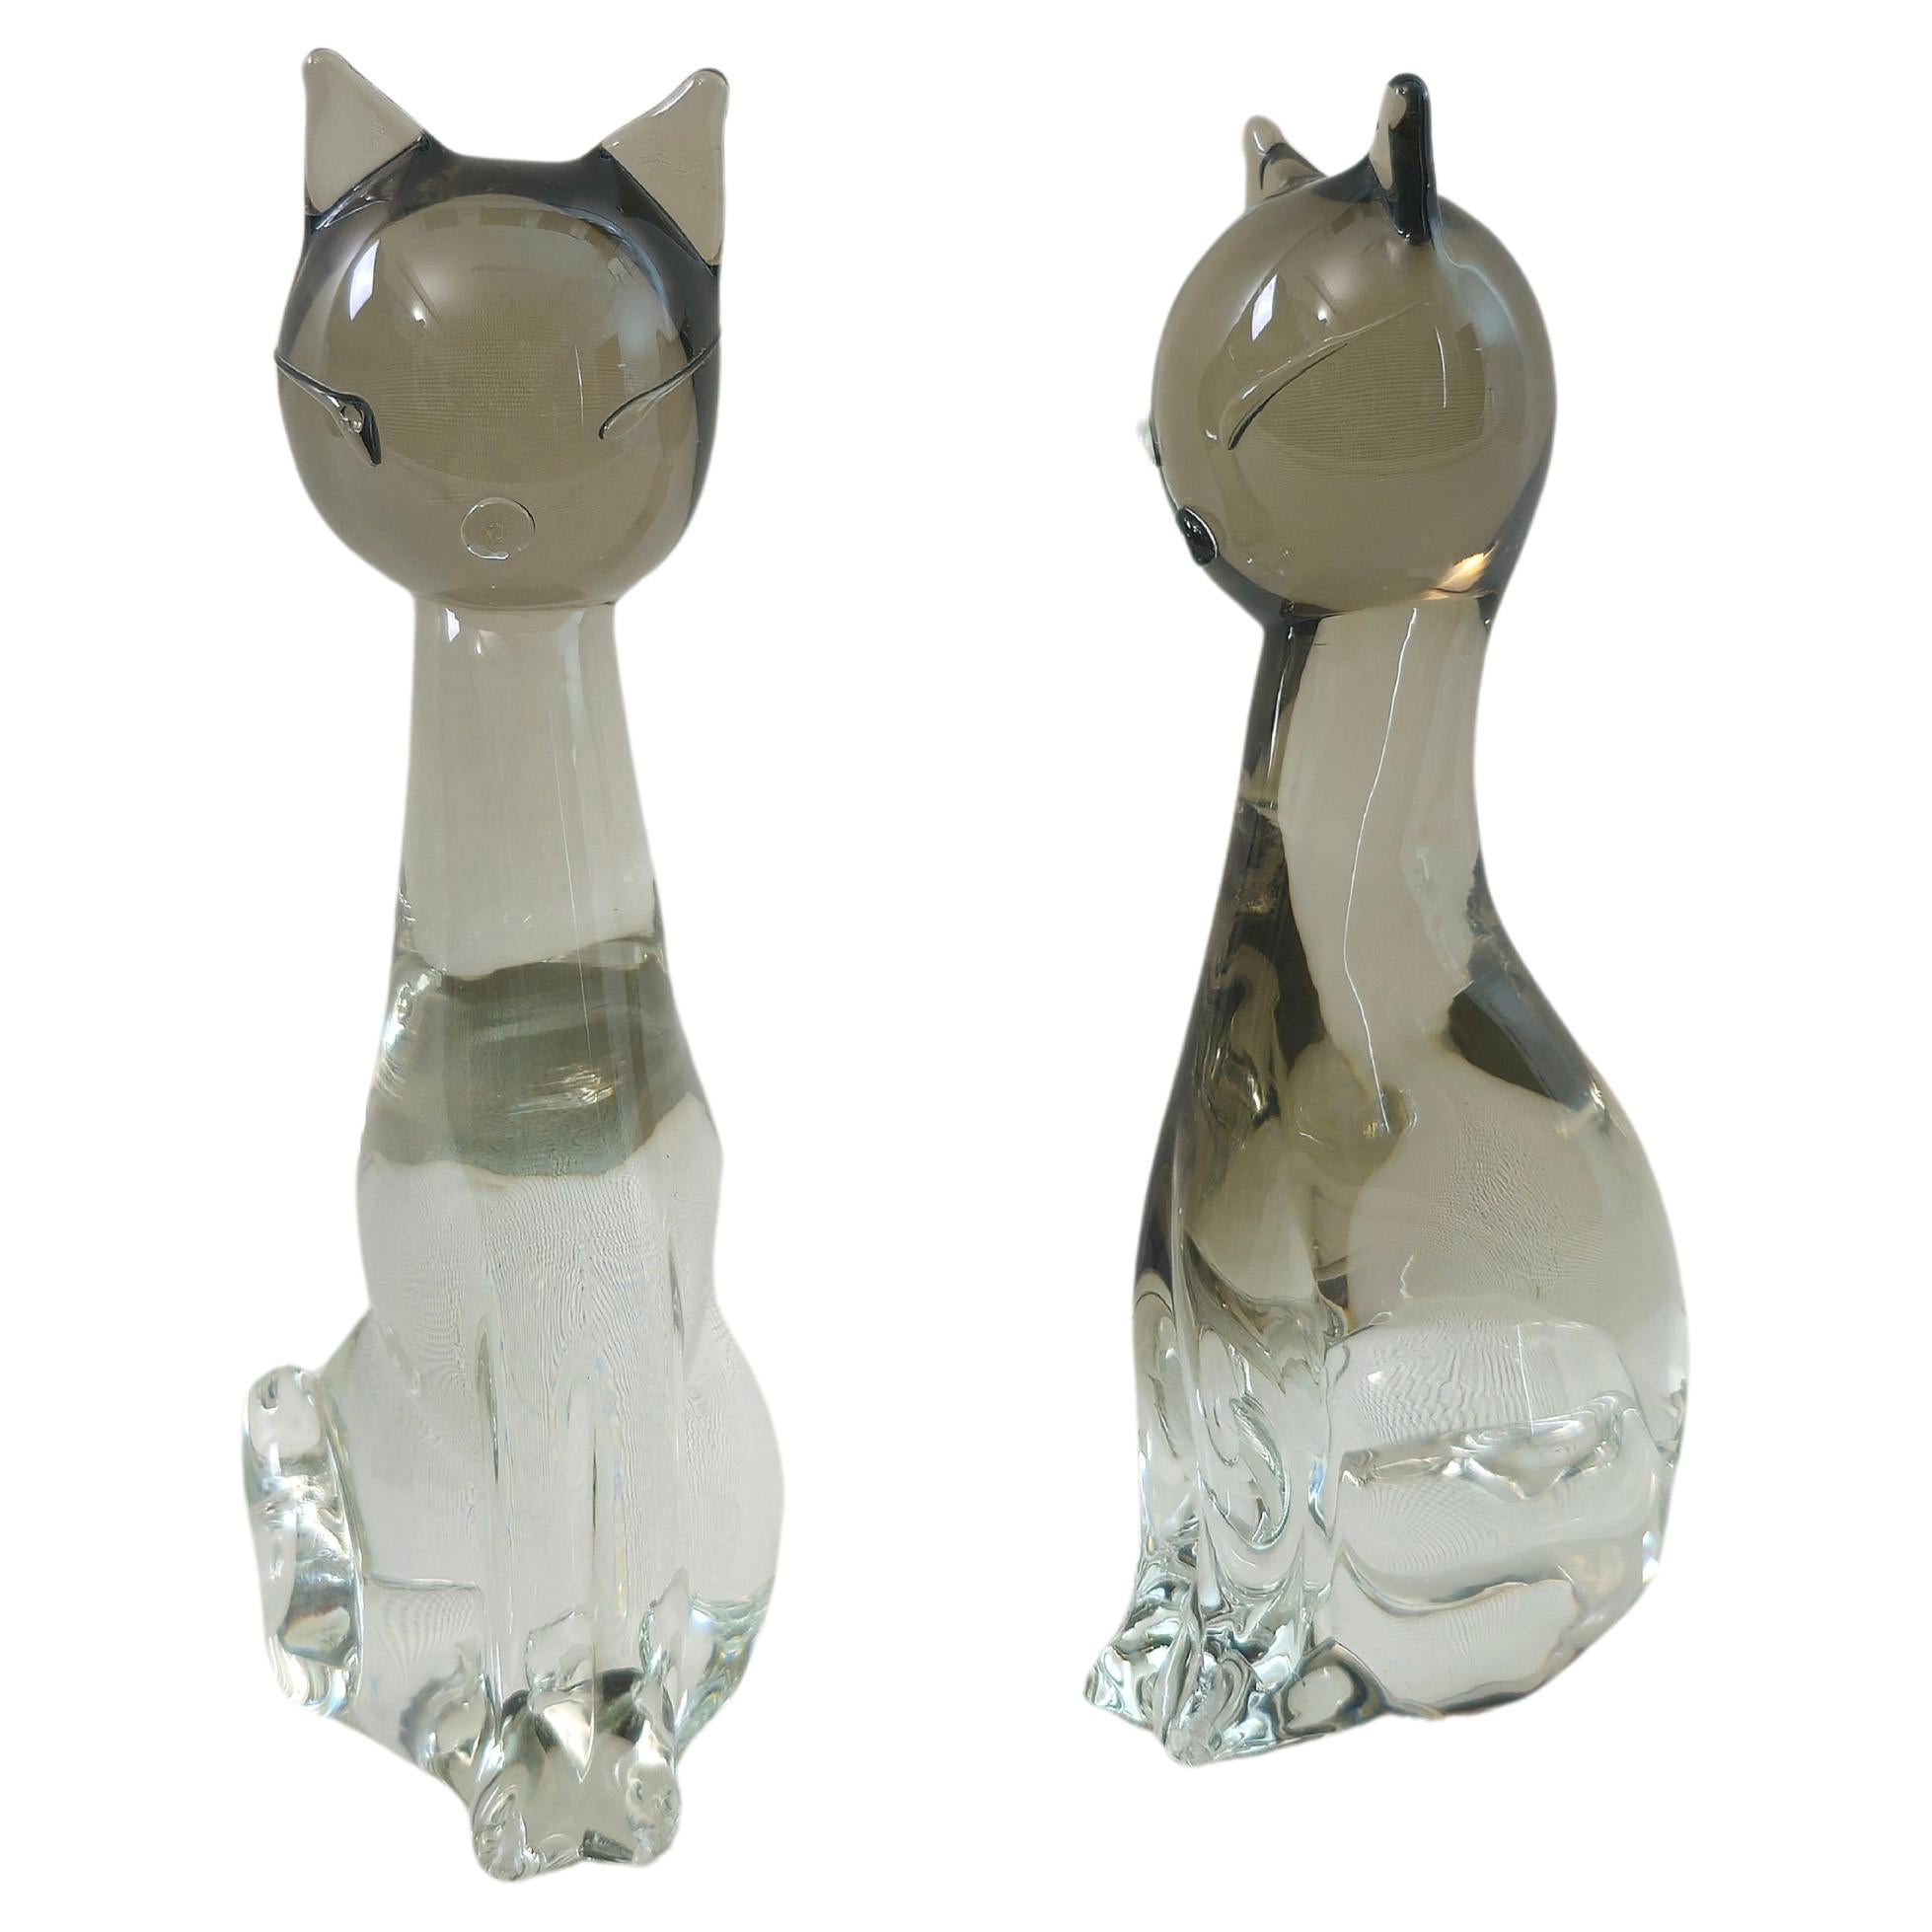 Dekorative Objekte Skulpturen Katzen Murano Glas Zanetti Midcentury 70s Set von 2